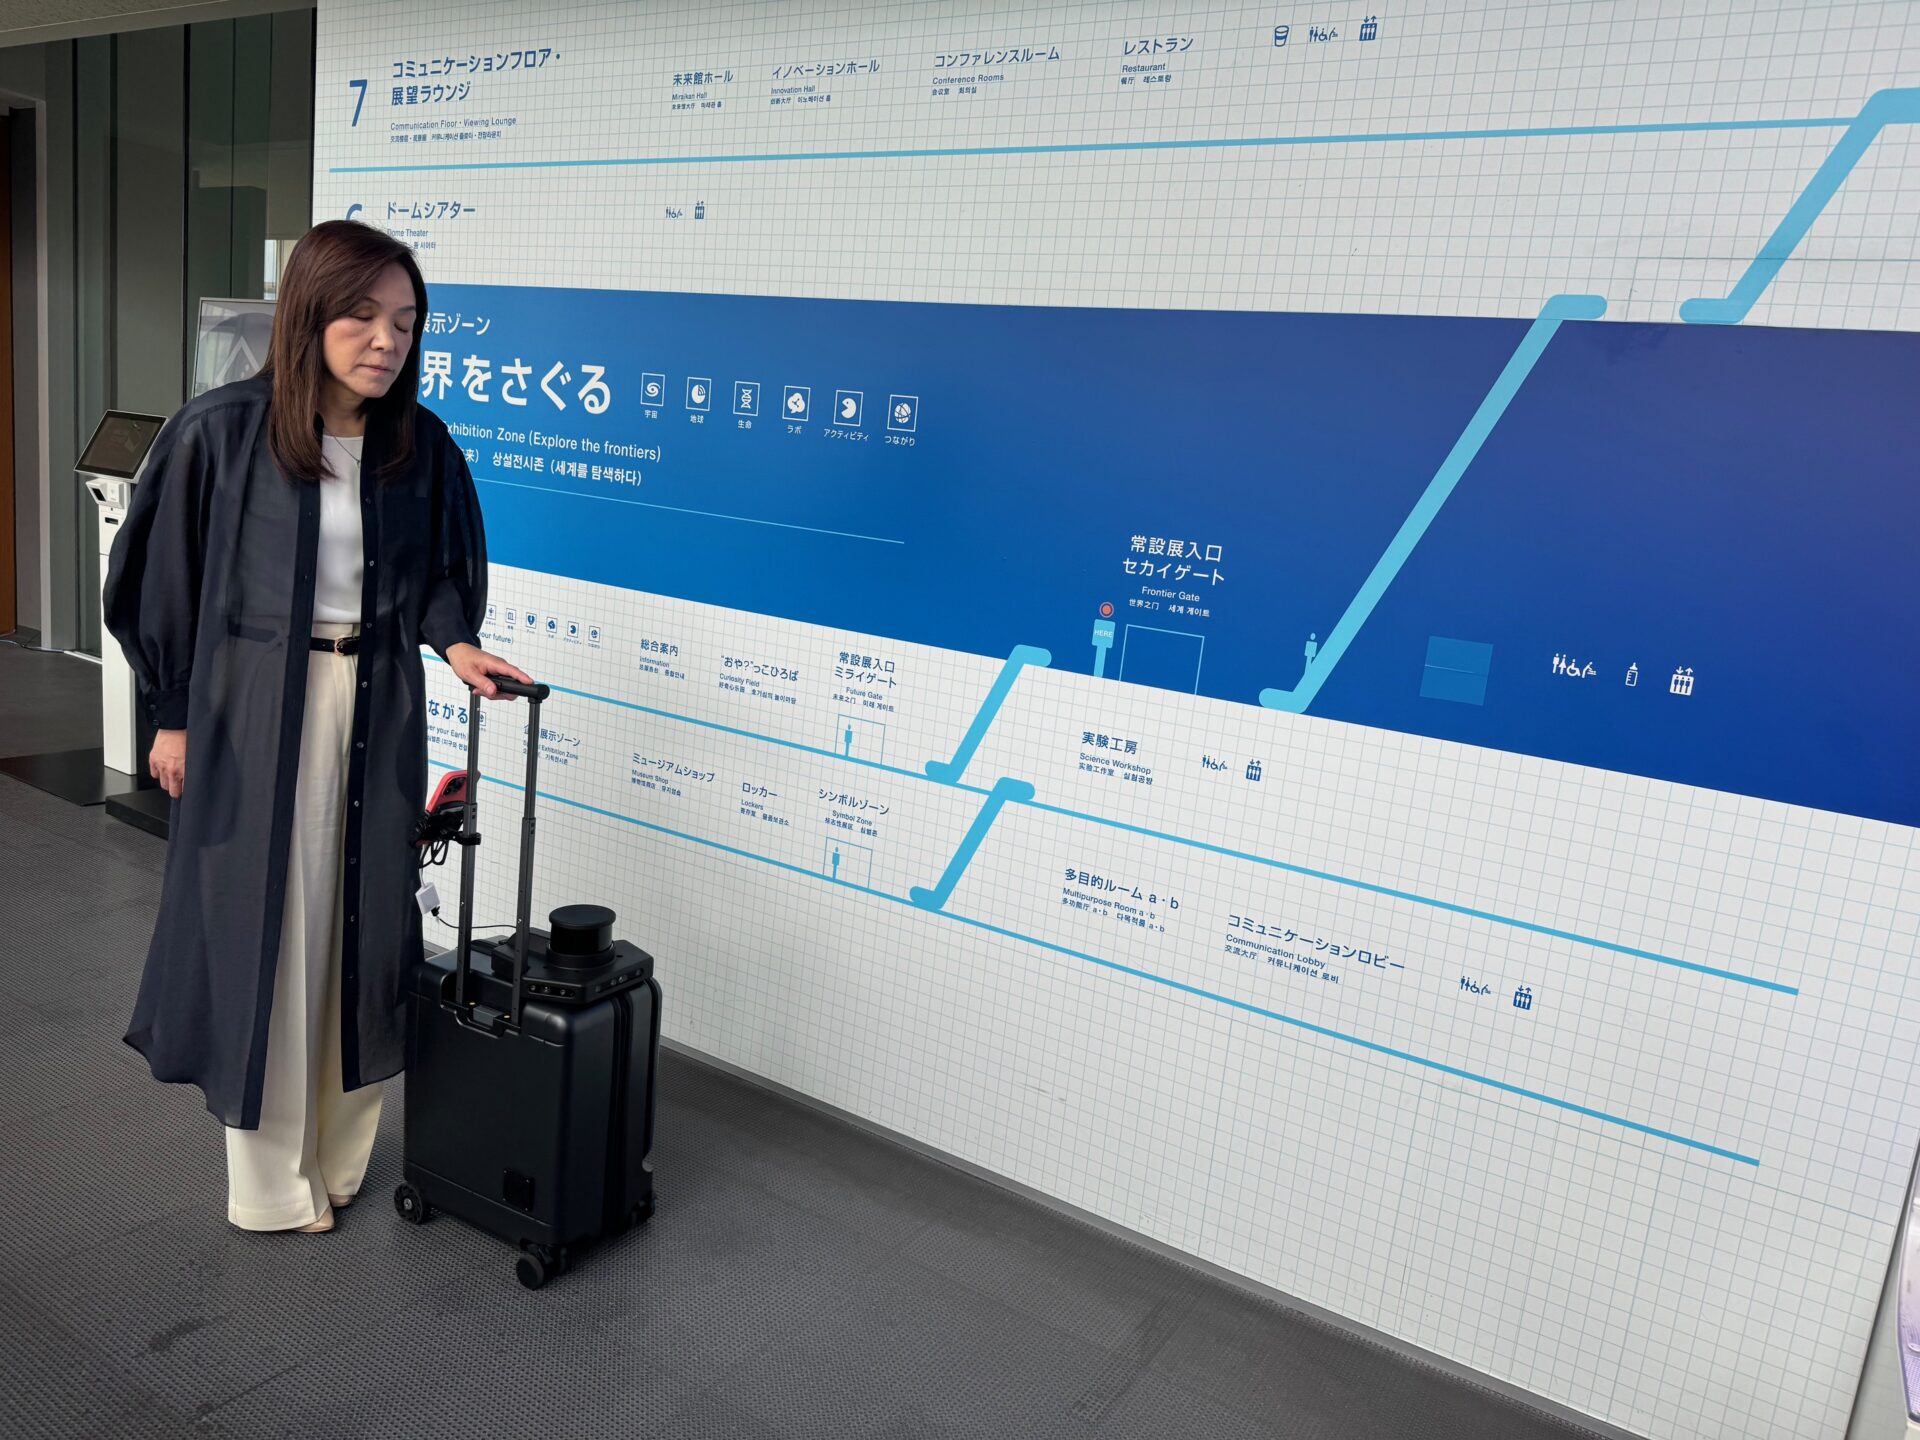 ふたたび歩き出したエーアイスーツケースと、浅川館長の写真